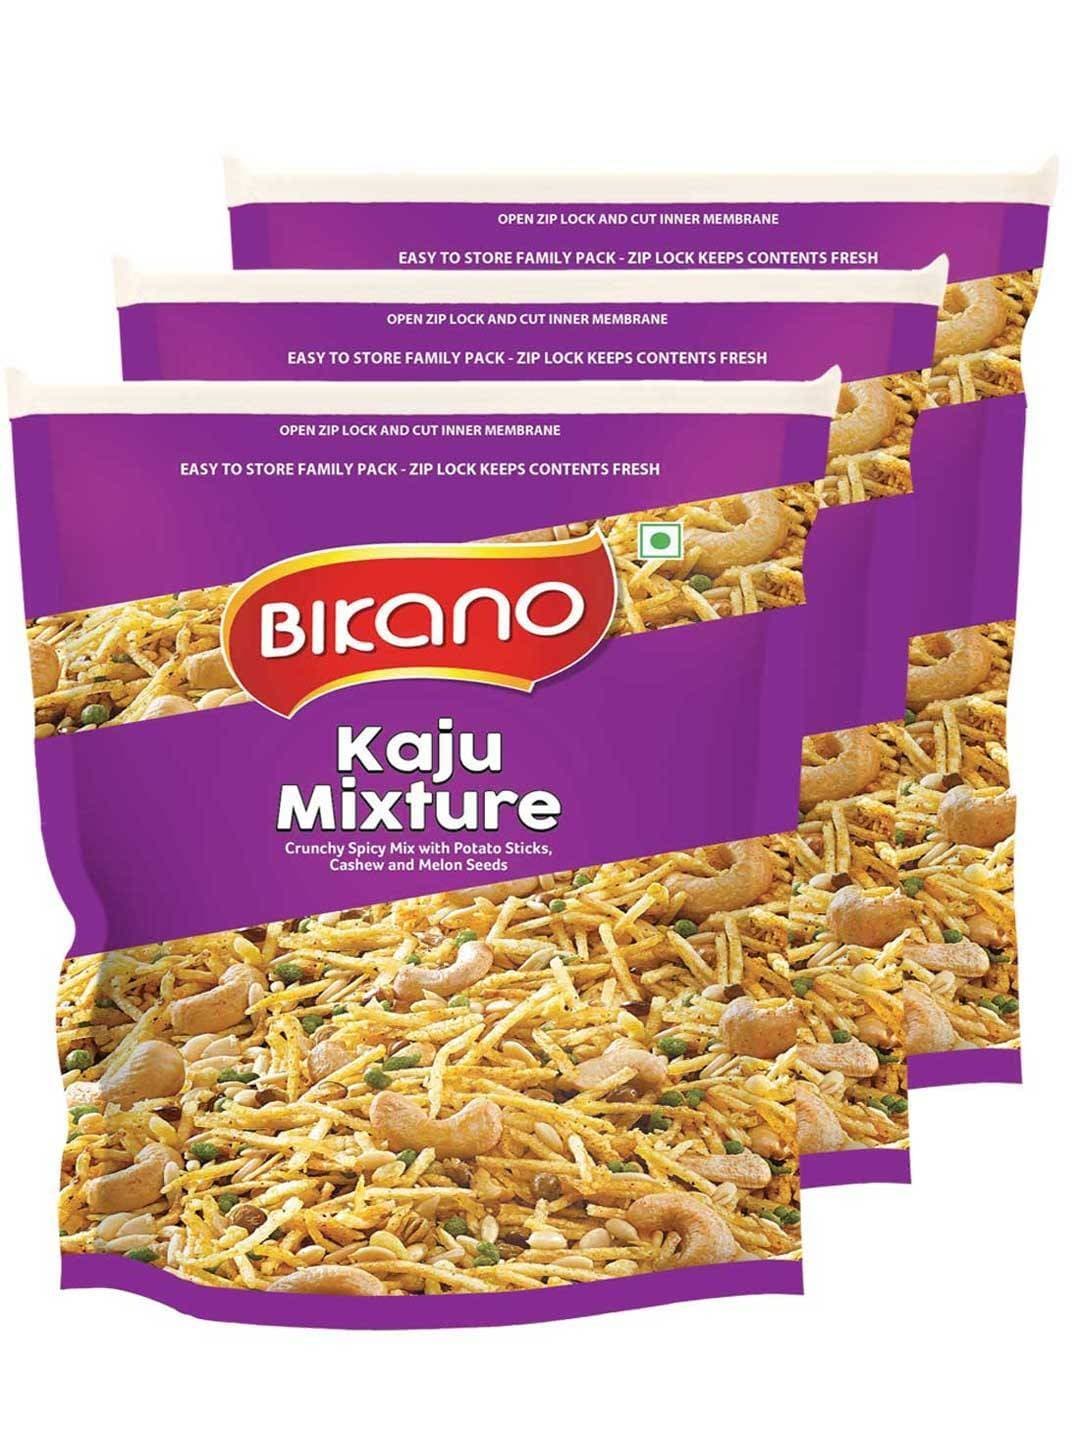 Bikano Kaju Mixture